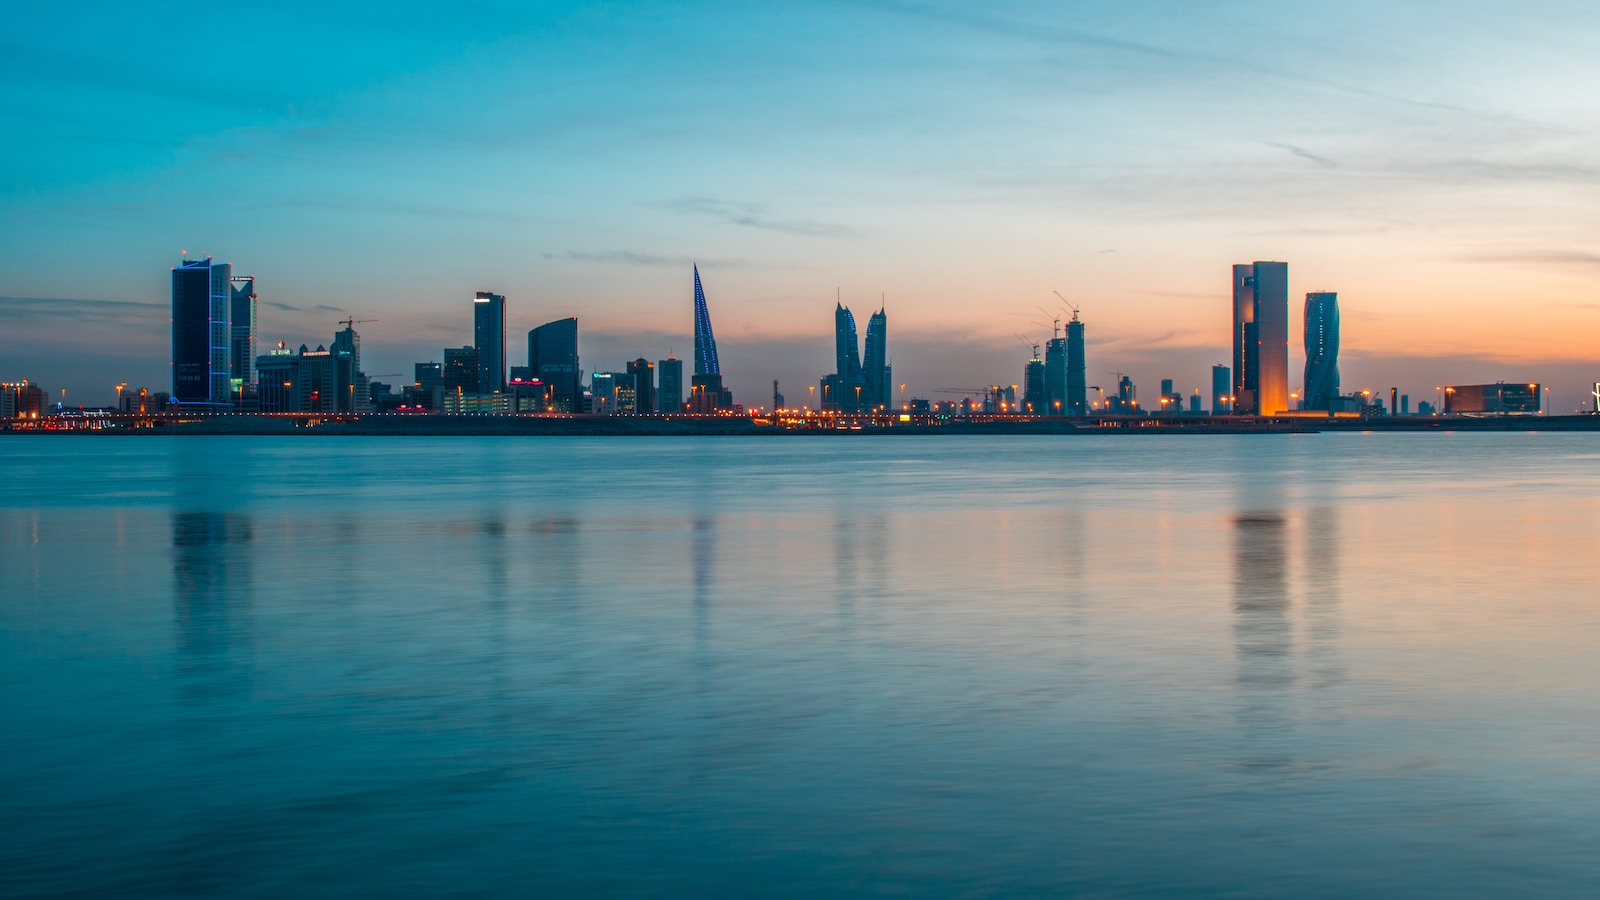 Manama wakacje, Manama pogoda, Manama atrakcje, Manama bahrajn, Manama wczasy, Manama last minute, Bahrajn wakacje, Bahrajn all inclusive